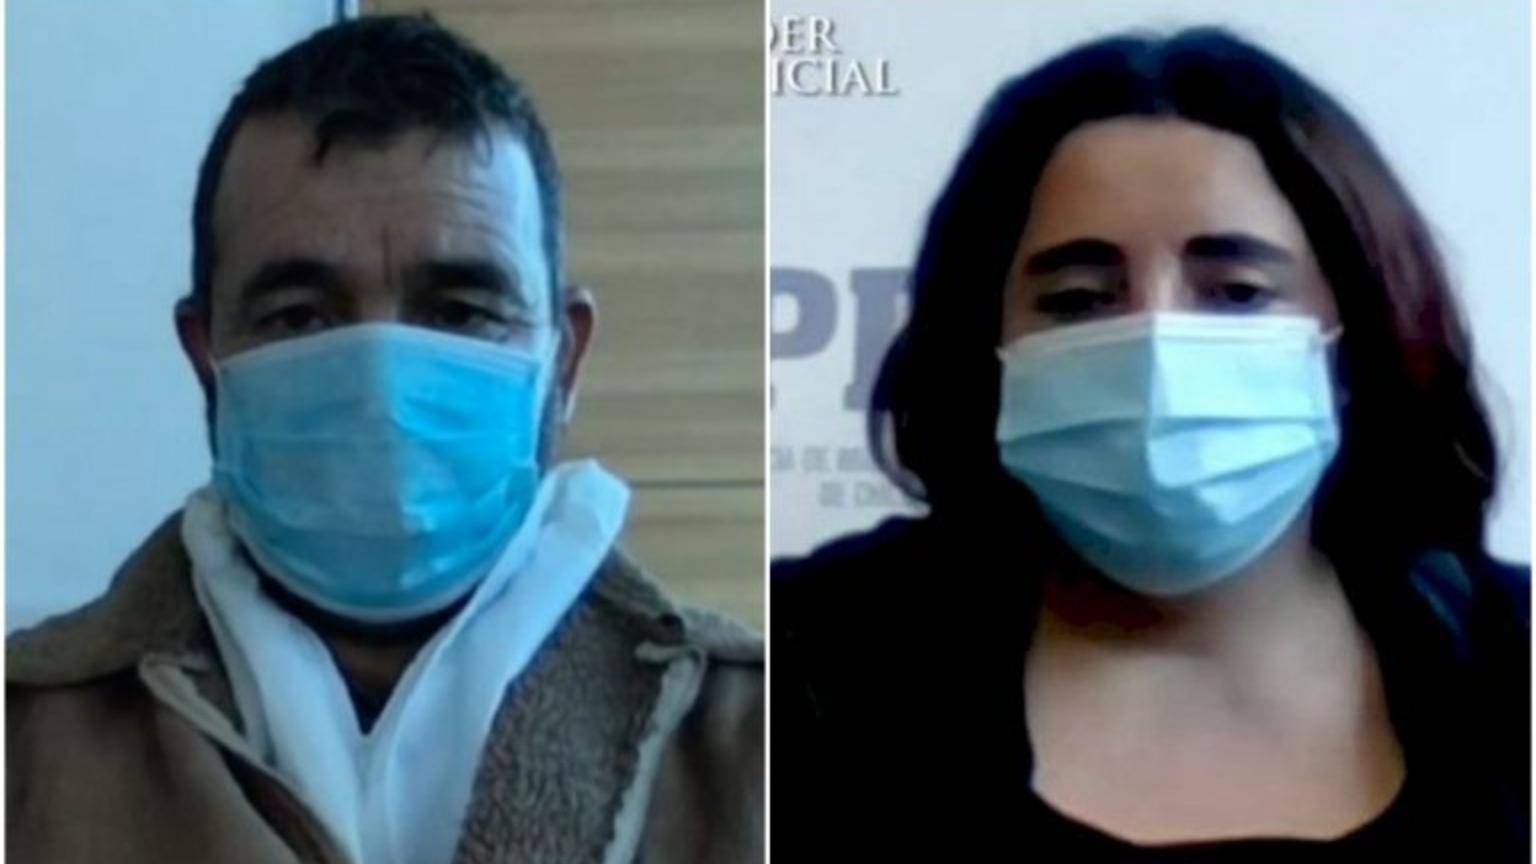 Cadena perpetua a una pareja por feminicidio que conmocionó a Chile en 2020